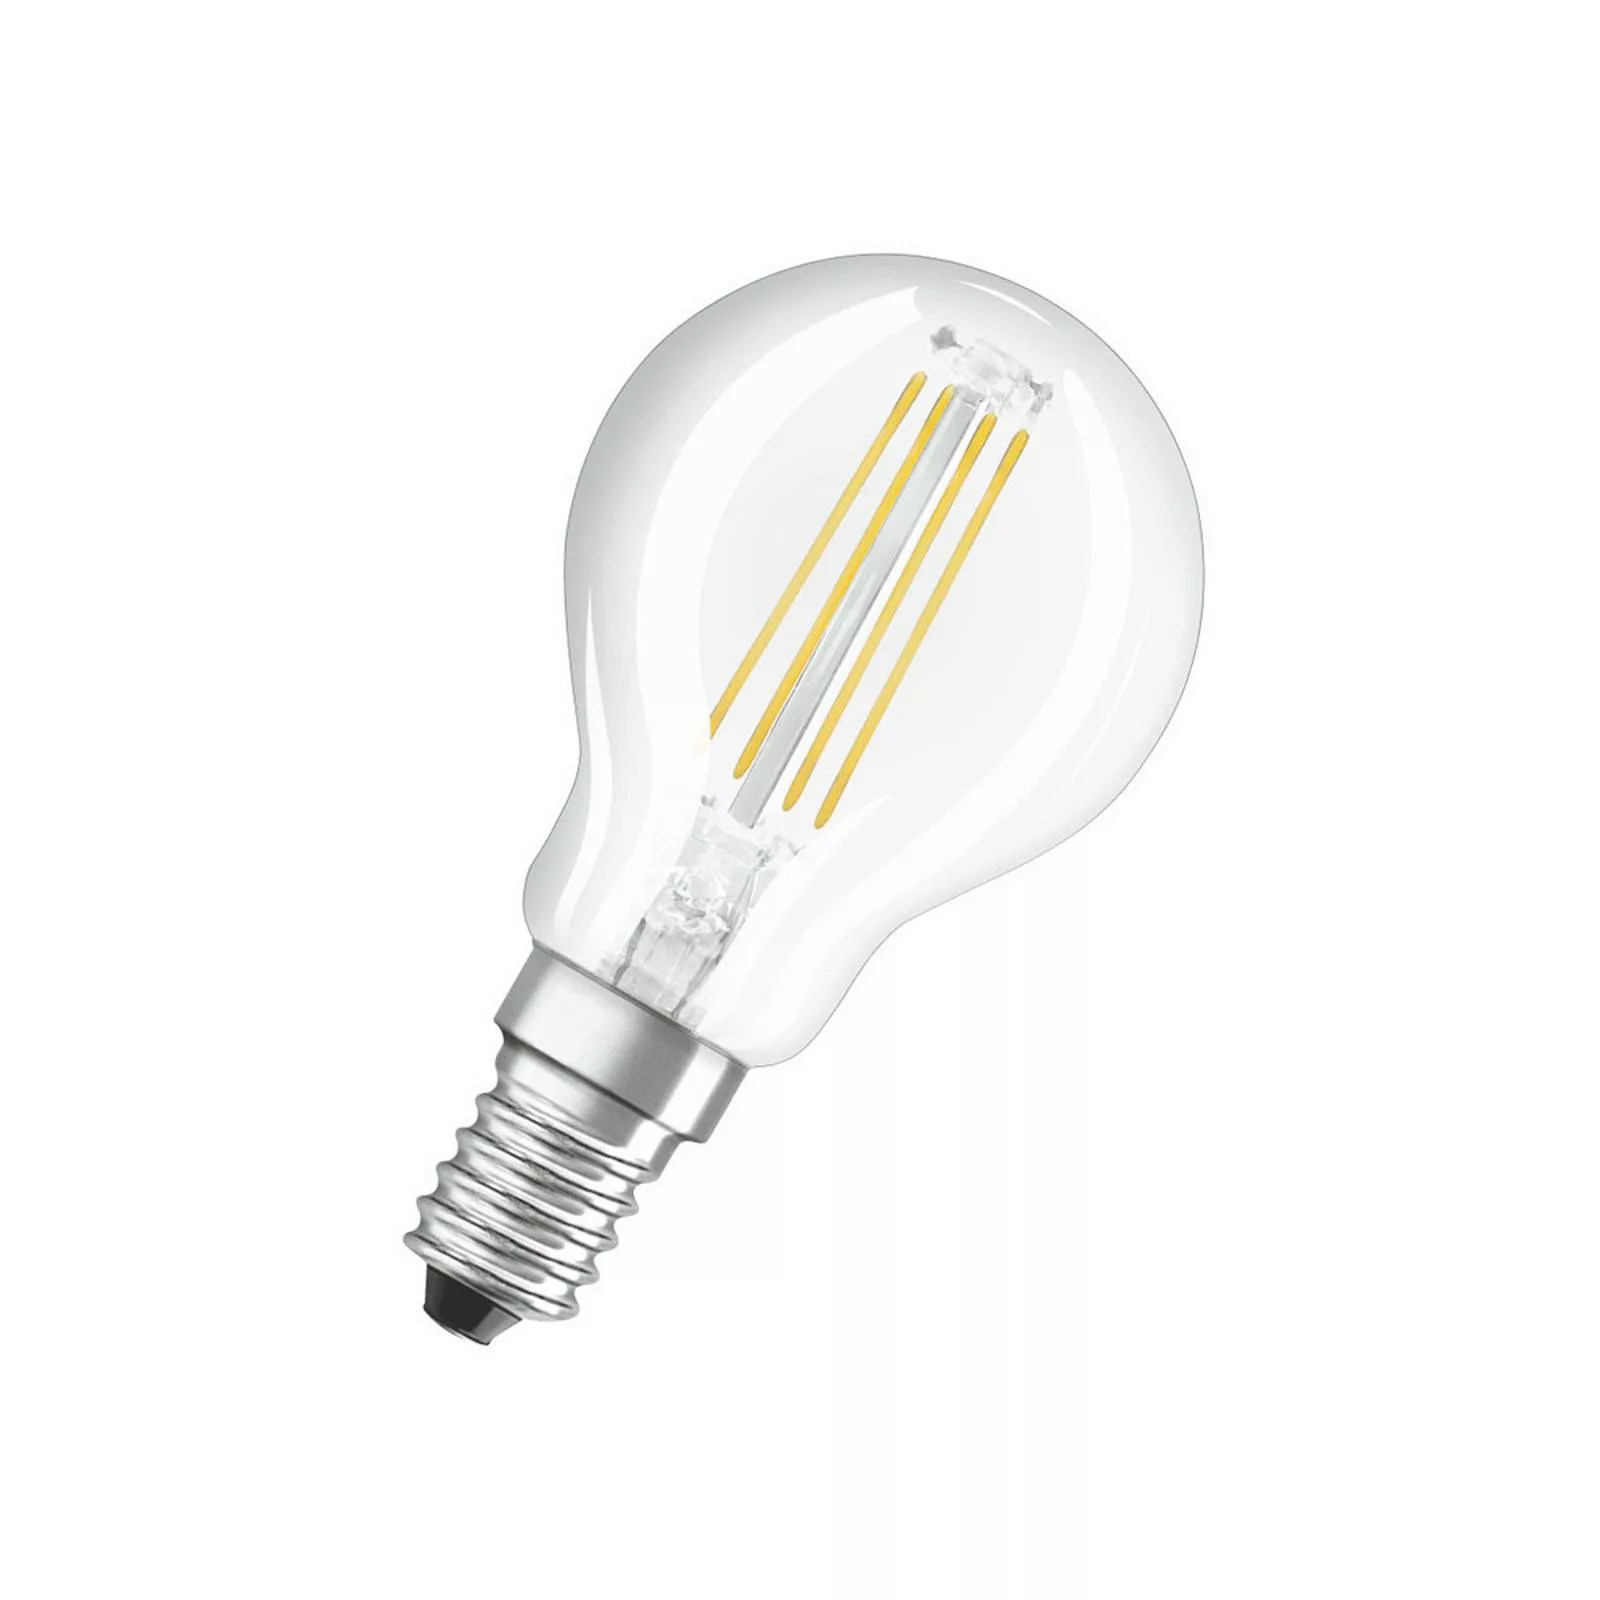 OSRAM LED-Lampe E14 P40 4W Filament 827 470lm 5er günstig online kaufen